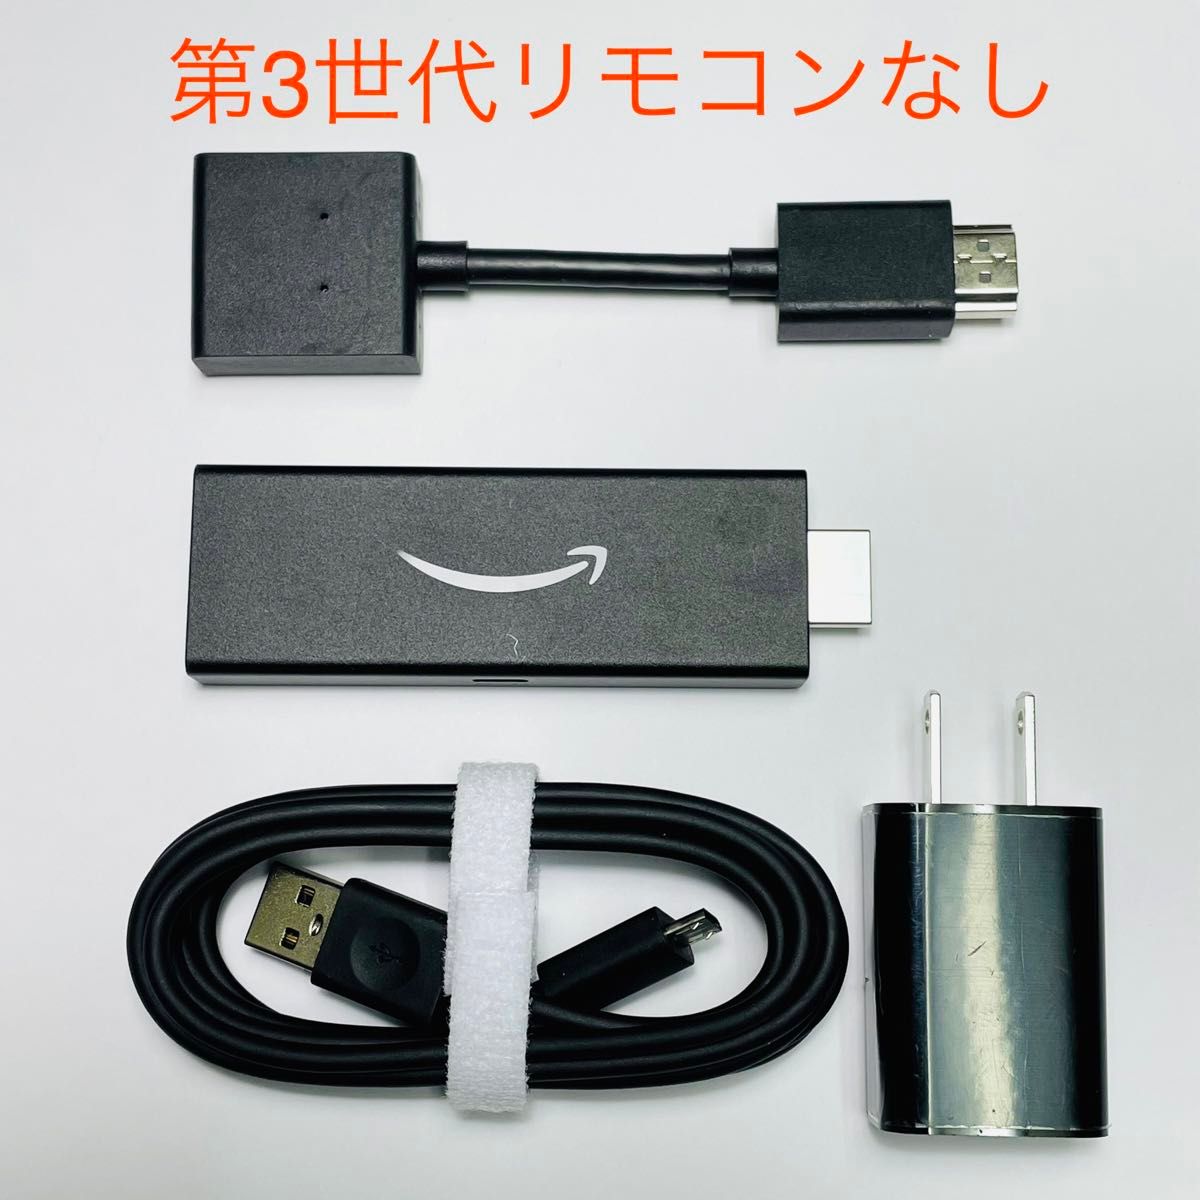 Amazon Fire TV Stick 第3世代 | HD対応スタンダードモデル　リモコンなし